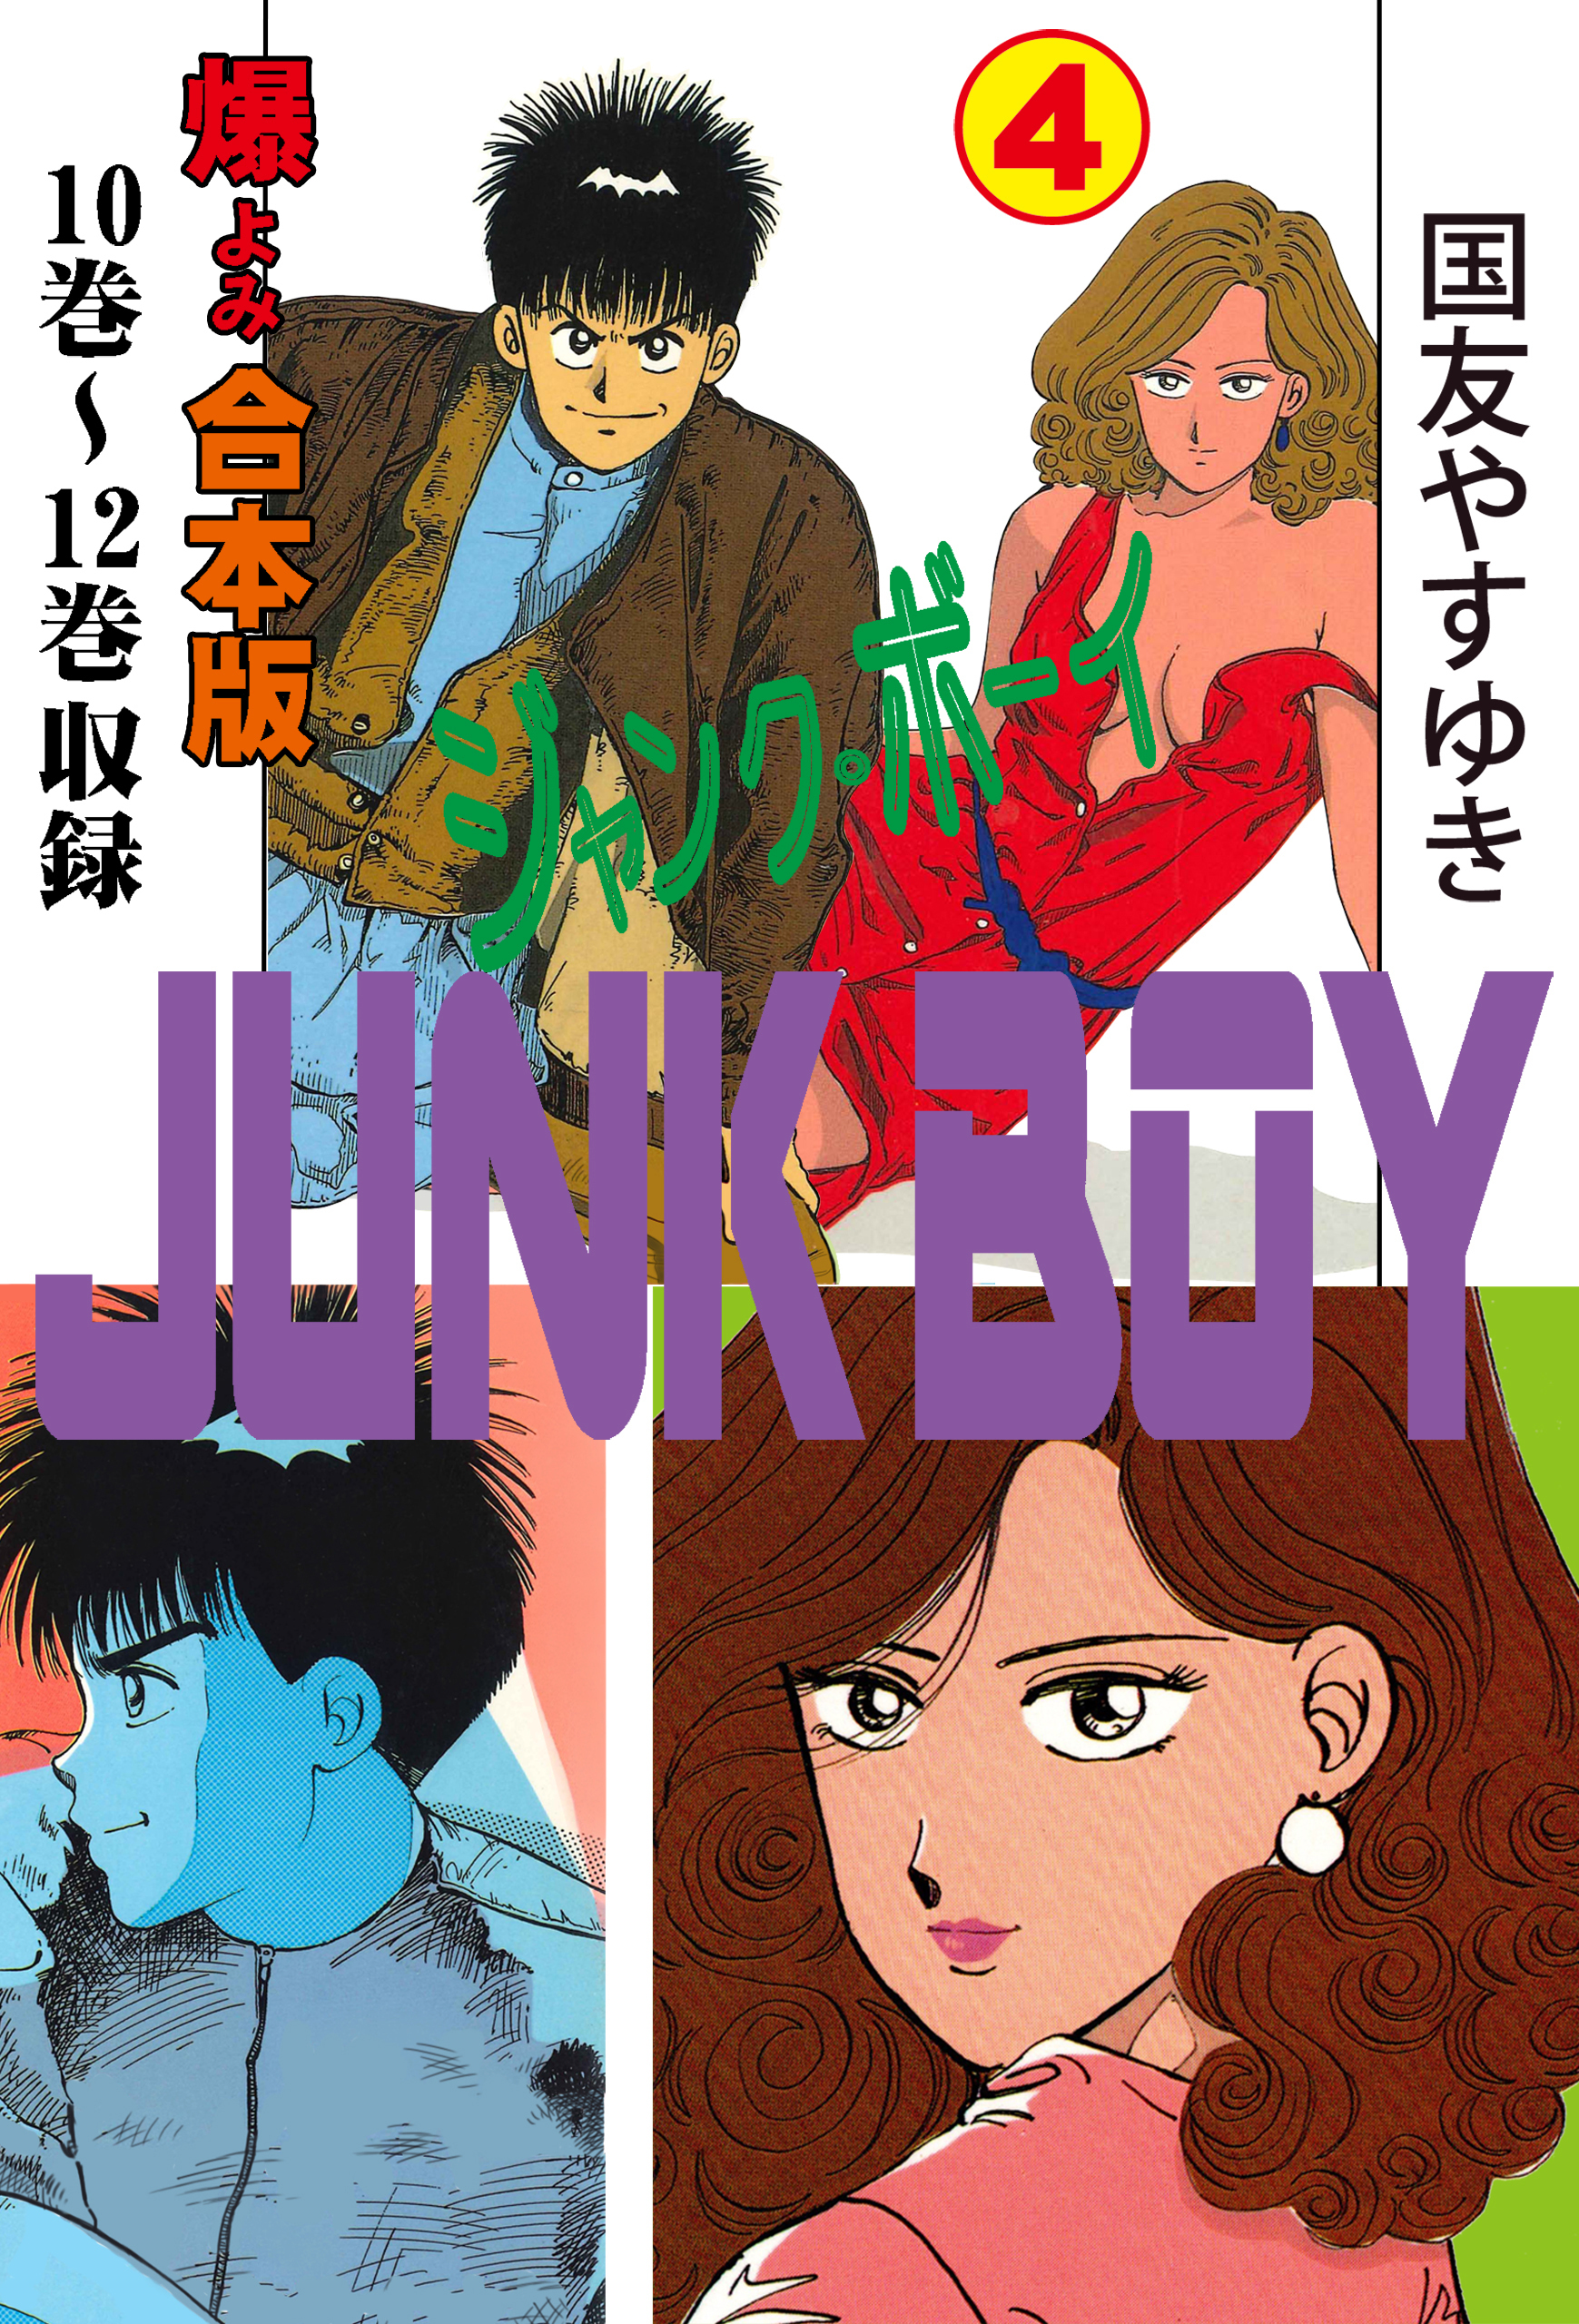 ◎80年代の同人誌 『JUNK BOY 原画集』 西島克彦 ジャンク・ボーイ 